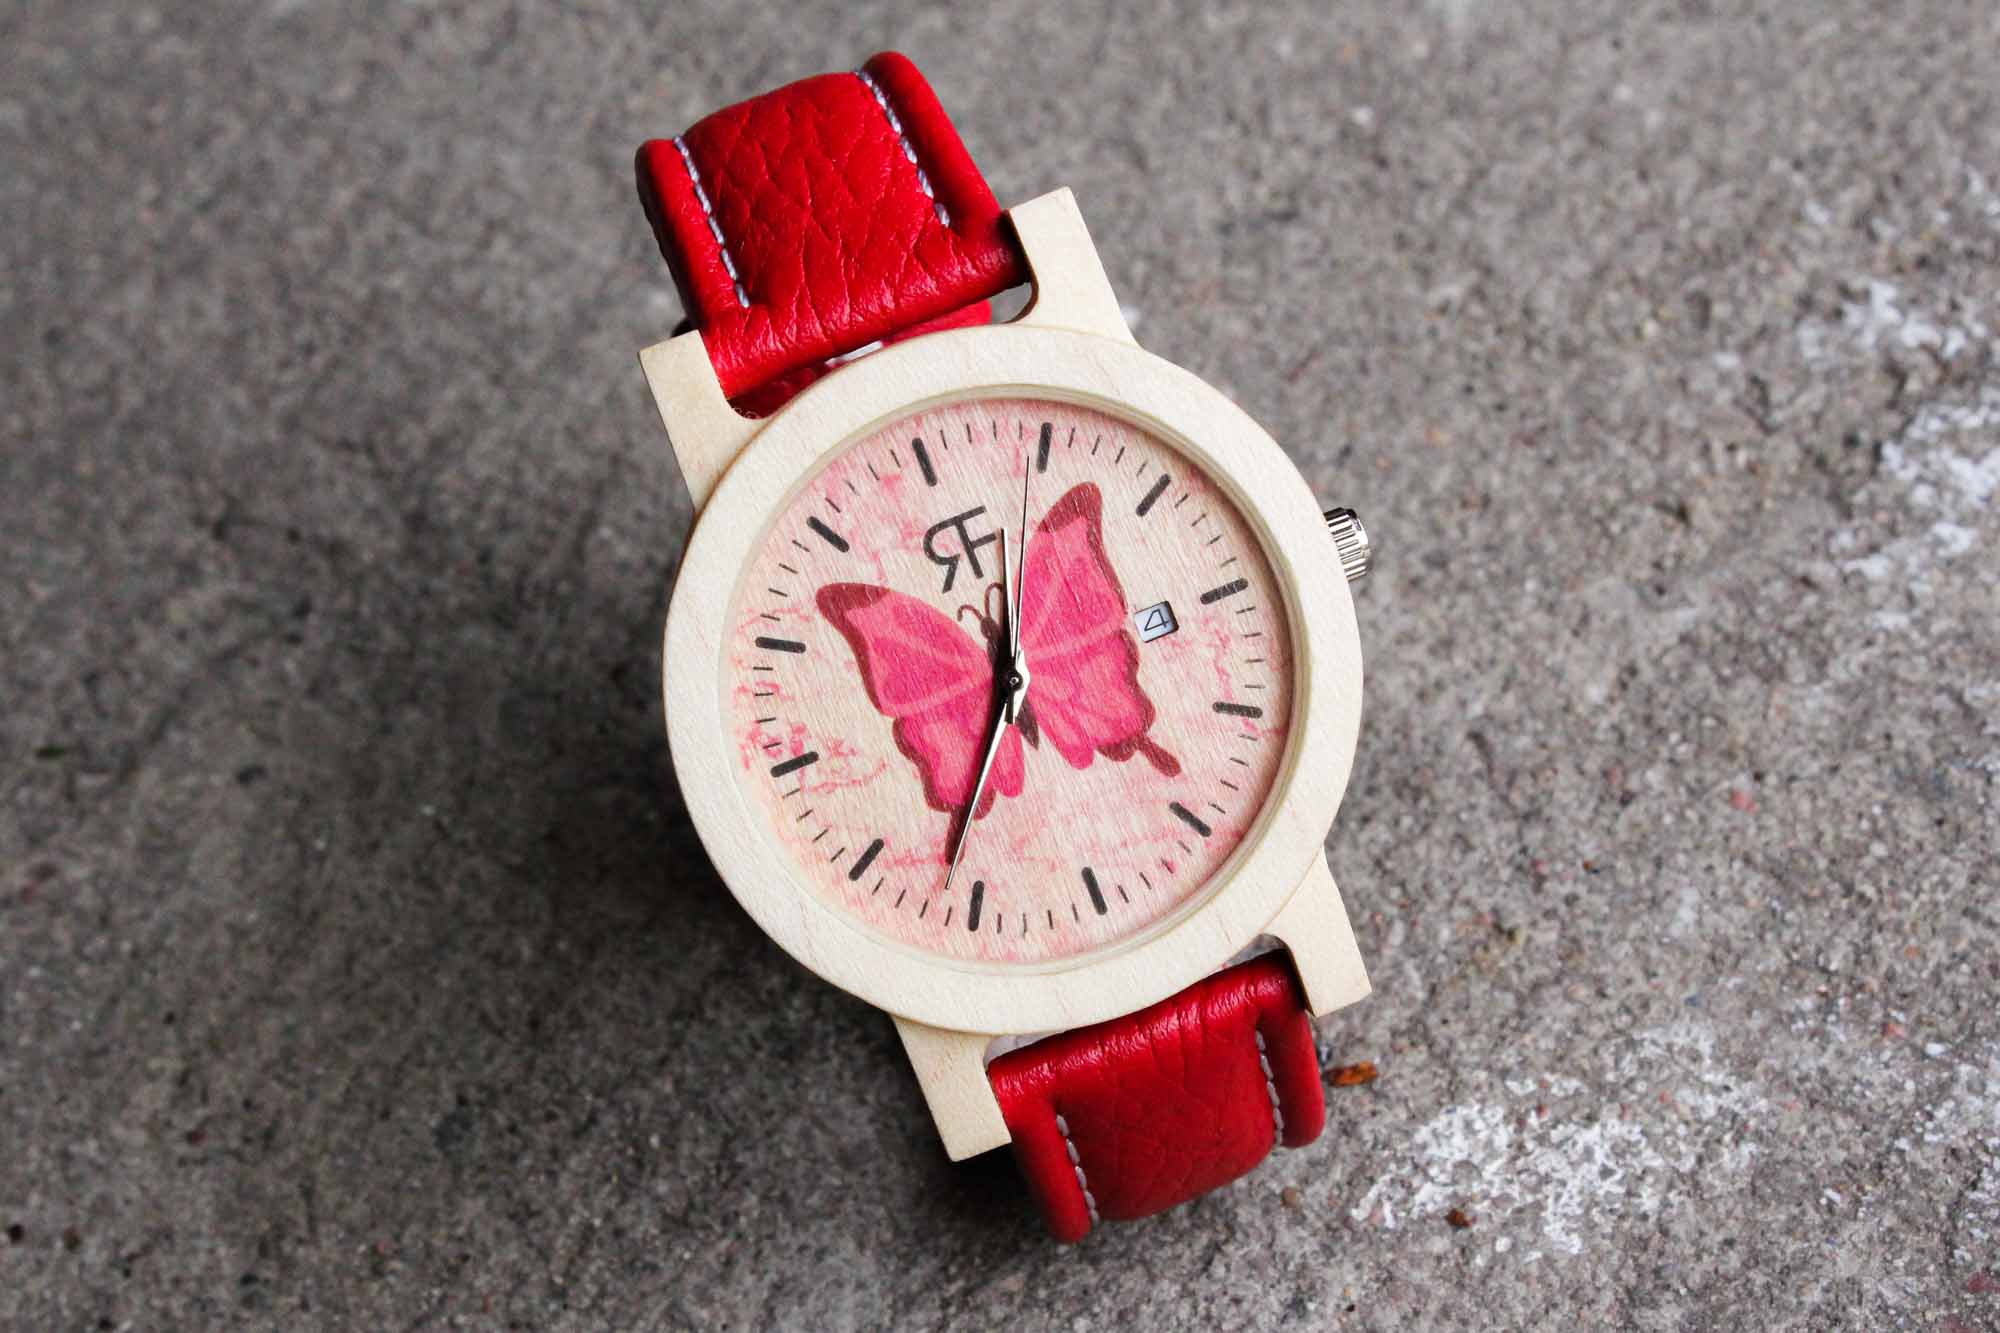 Zegarek na prezent — faux-pas czy strzał w dziesiątkę?